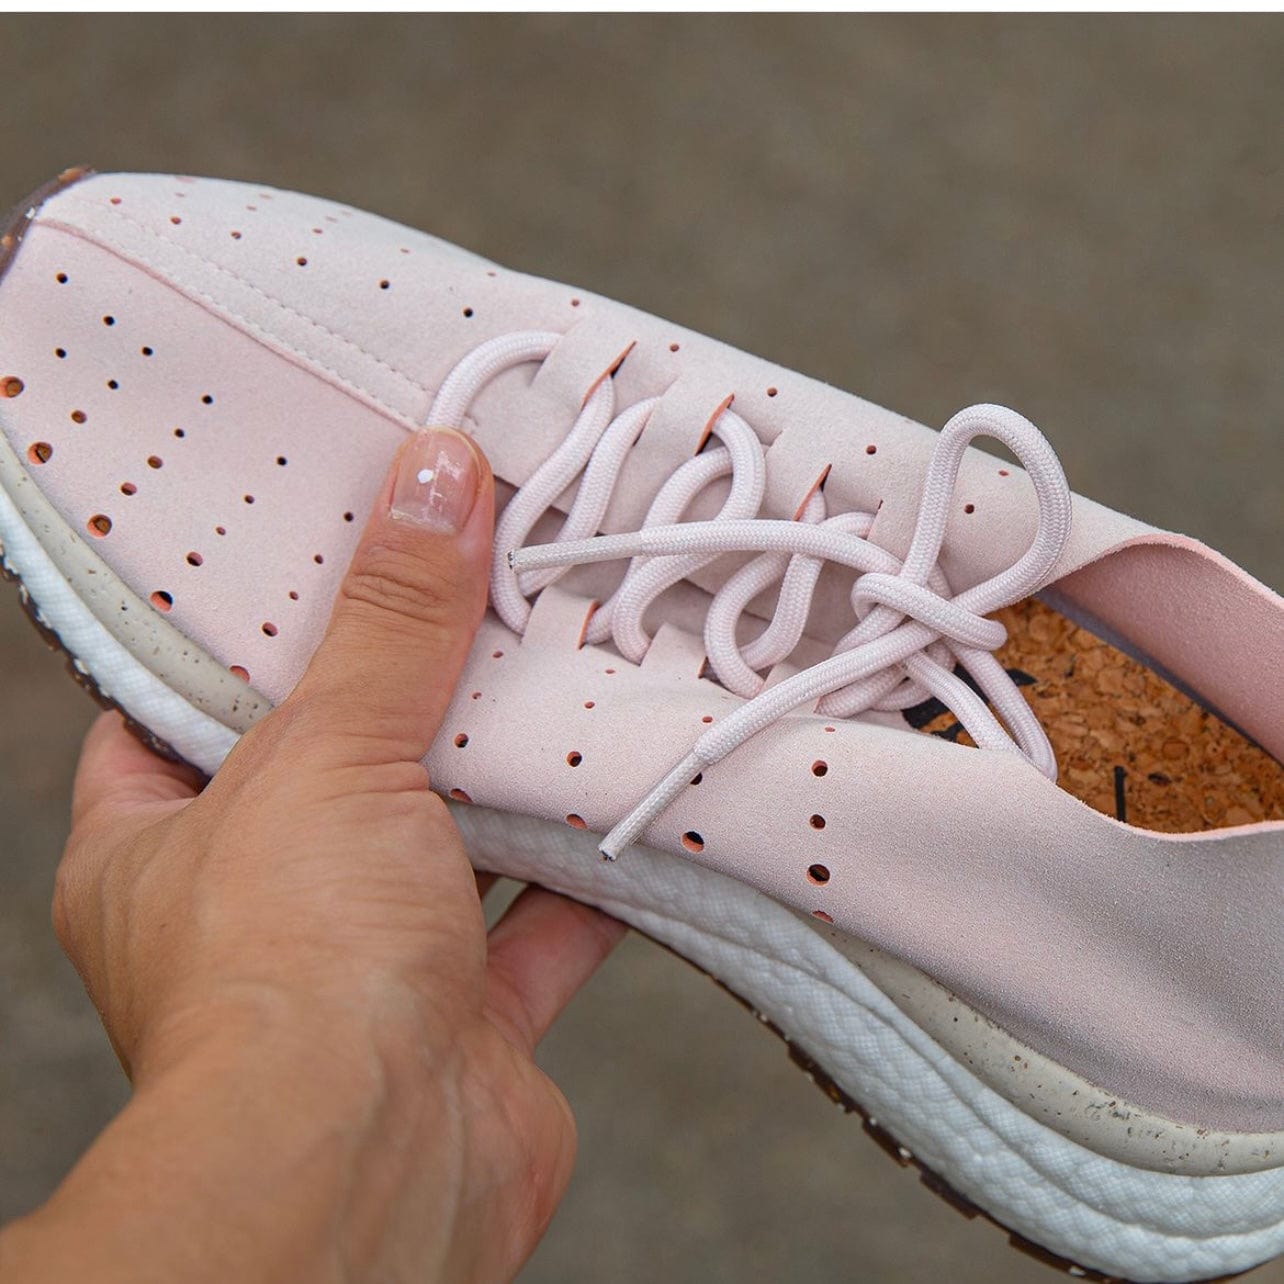 OTBT OTBT Alstead Sneaker in Light Pink - Little Miss Muffin Children & Home